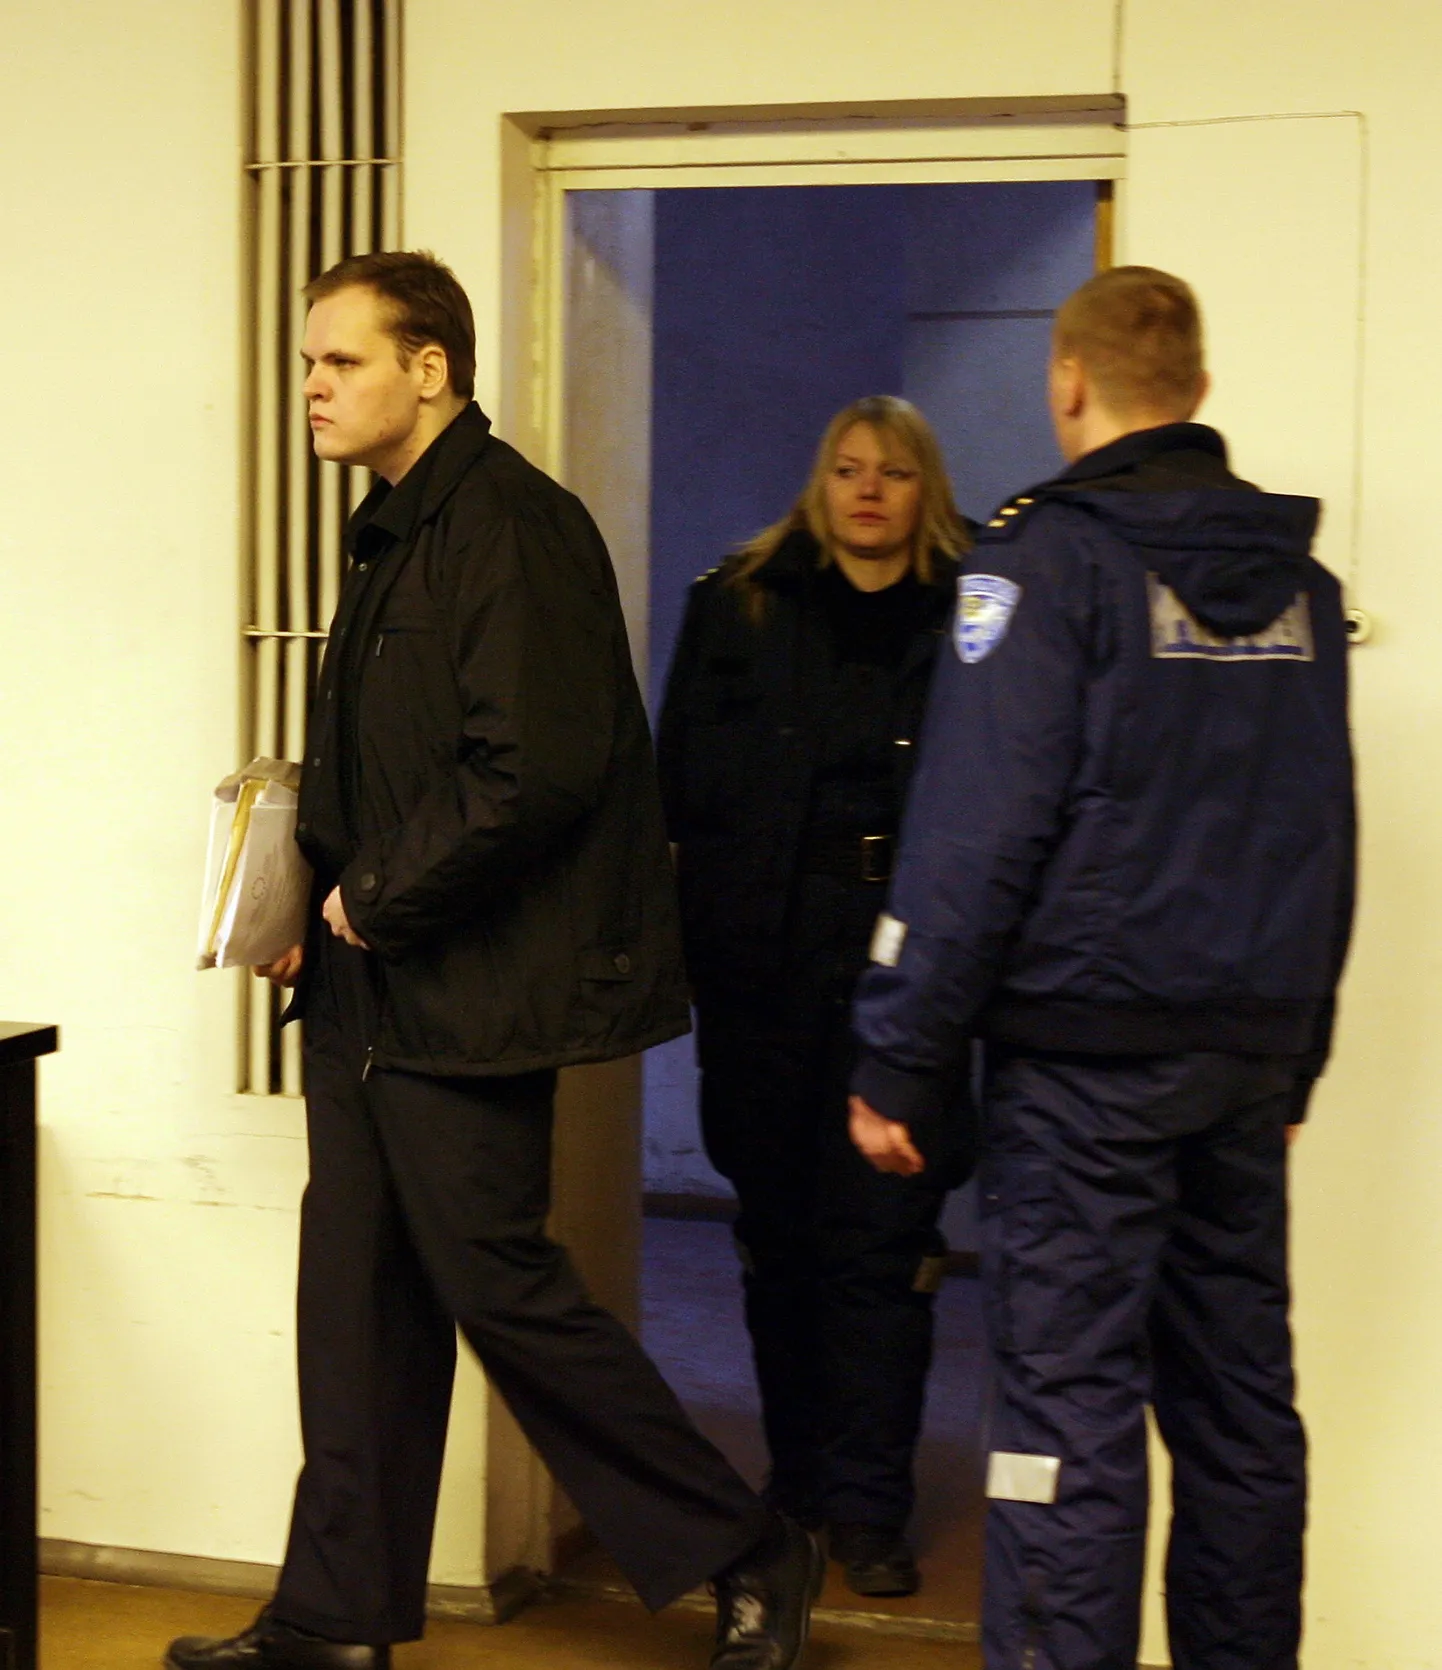 Tallinnas Maakri tänaval ärikaaslase tapnud ja laiba tükeldanud Markus Pasi Pönkä 2007. aastal Harju maakohtus.